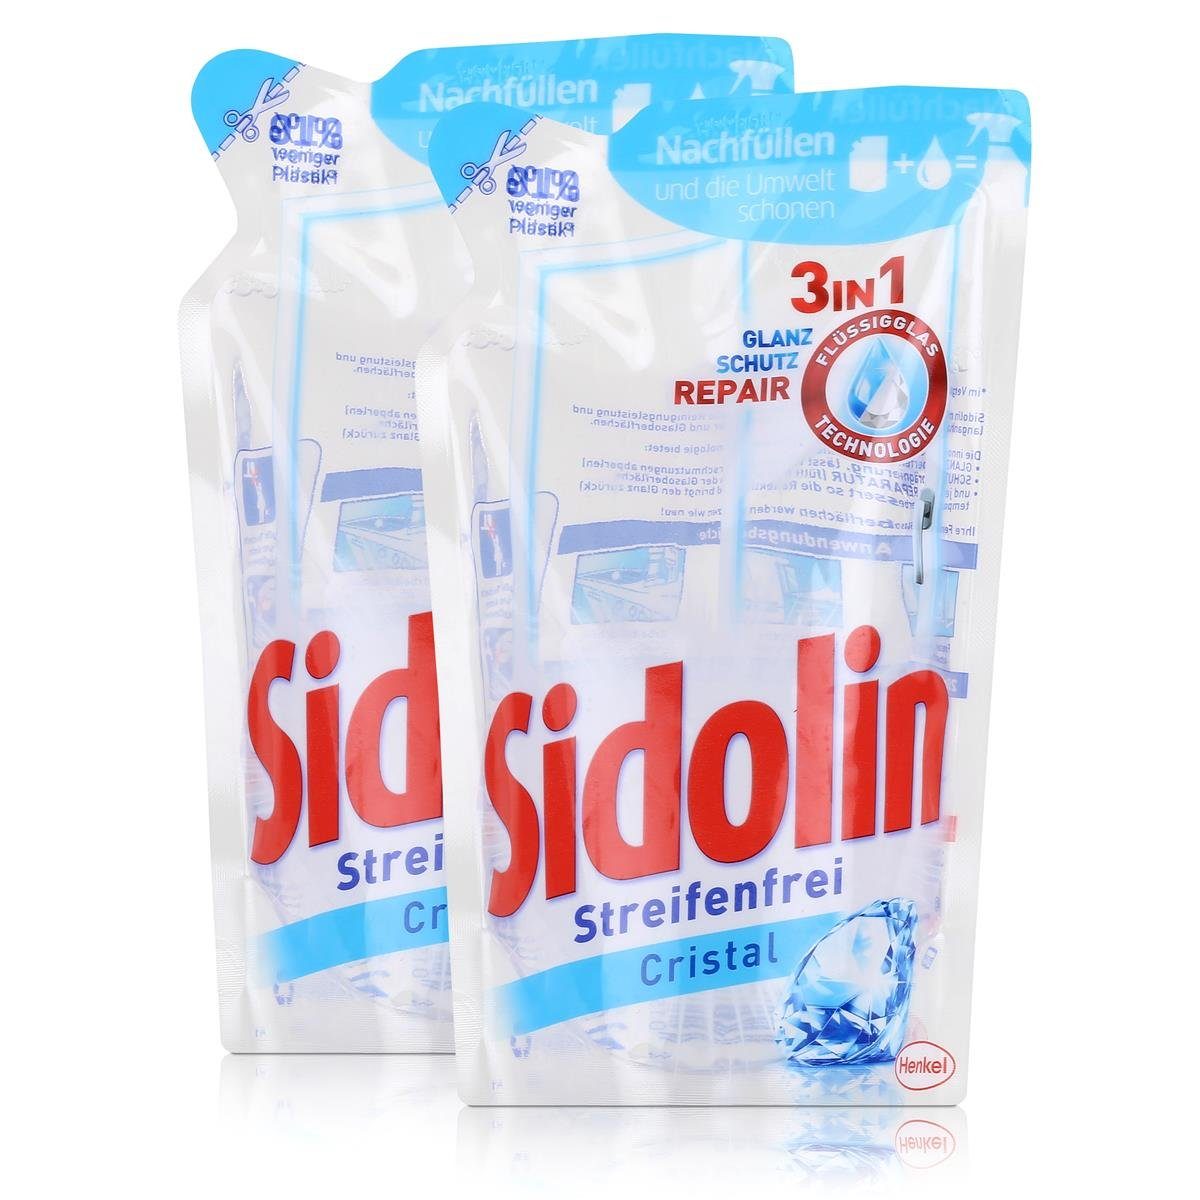 SIDOLIN Sidolin Streifenfrei Cristal Nachfüller 250ml - Glasreiniger (2er Pack Glasreiniger